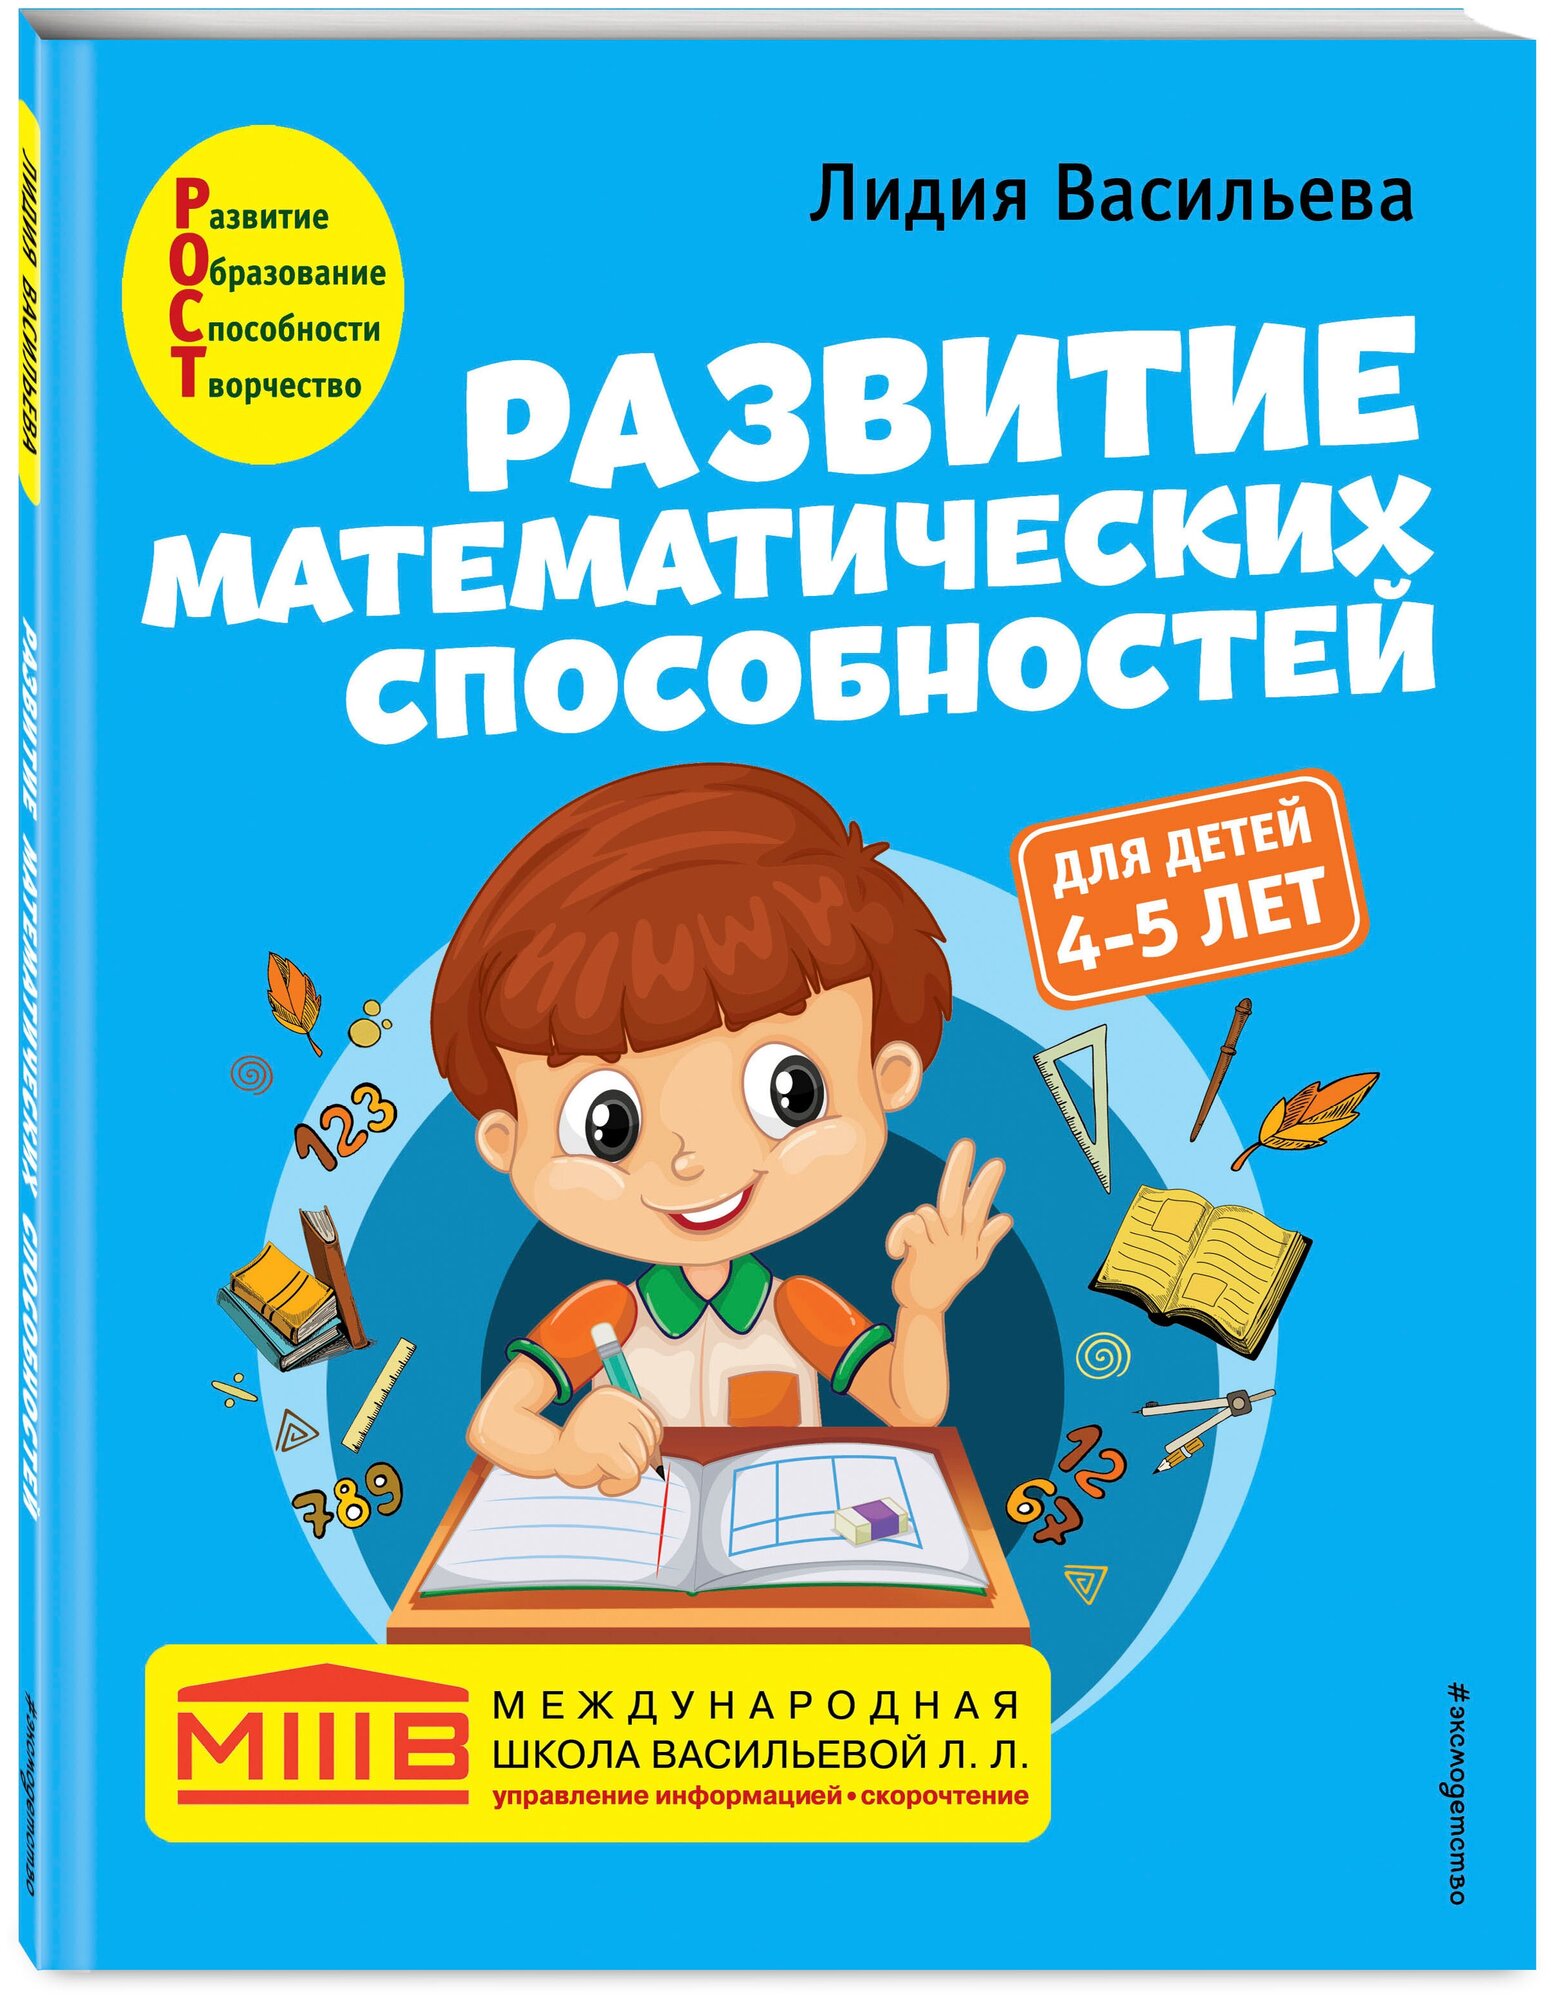 Васильева Л. Л. Развитие математических способностей: для детей 4-5 лет